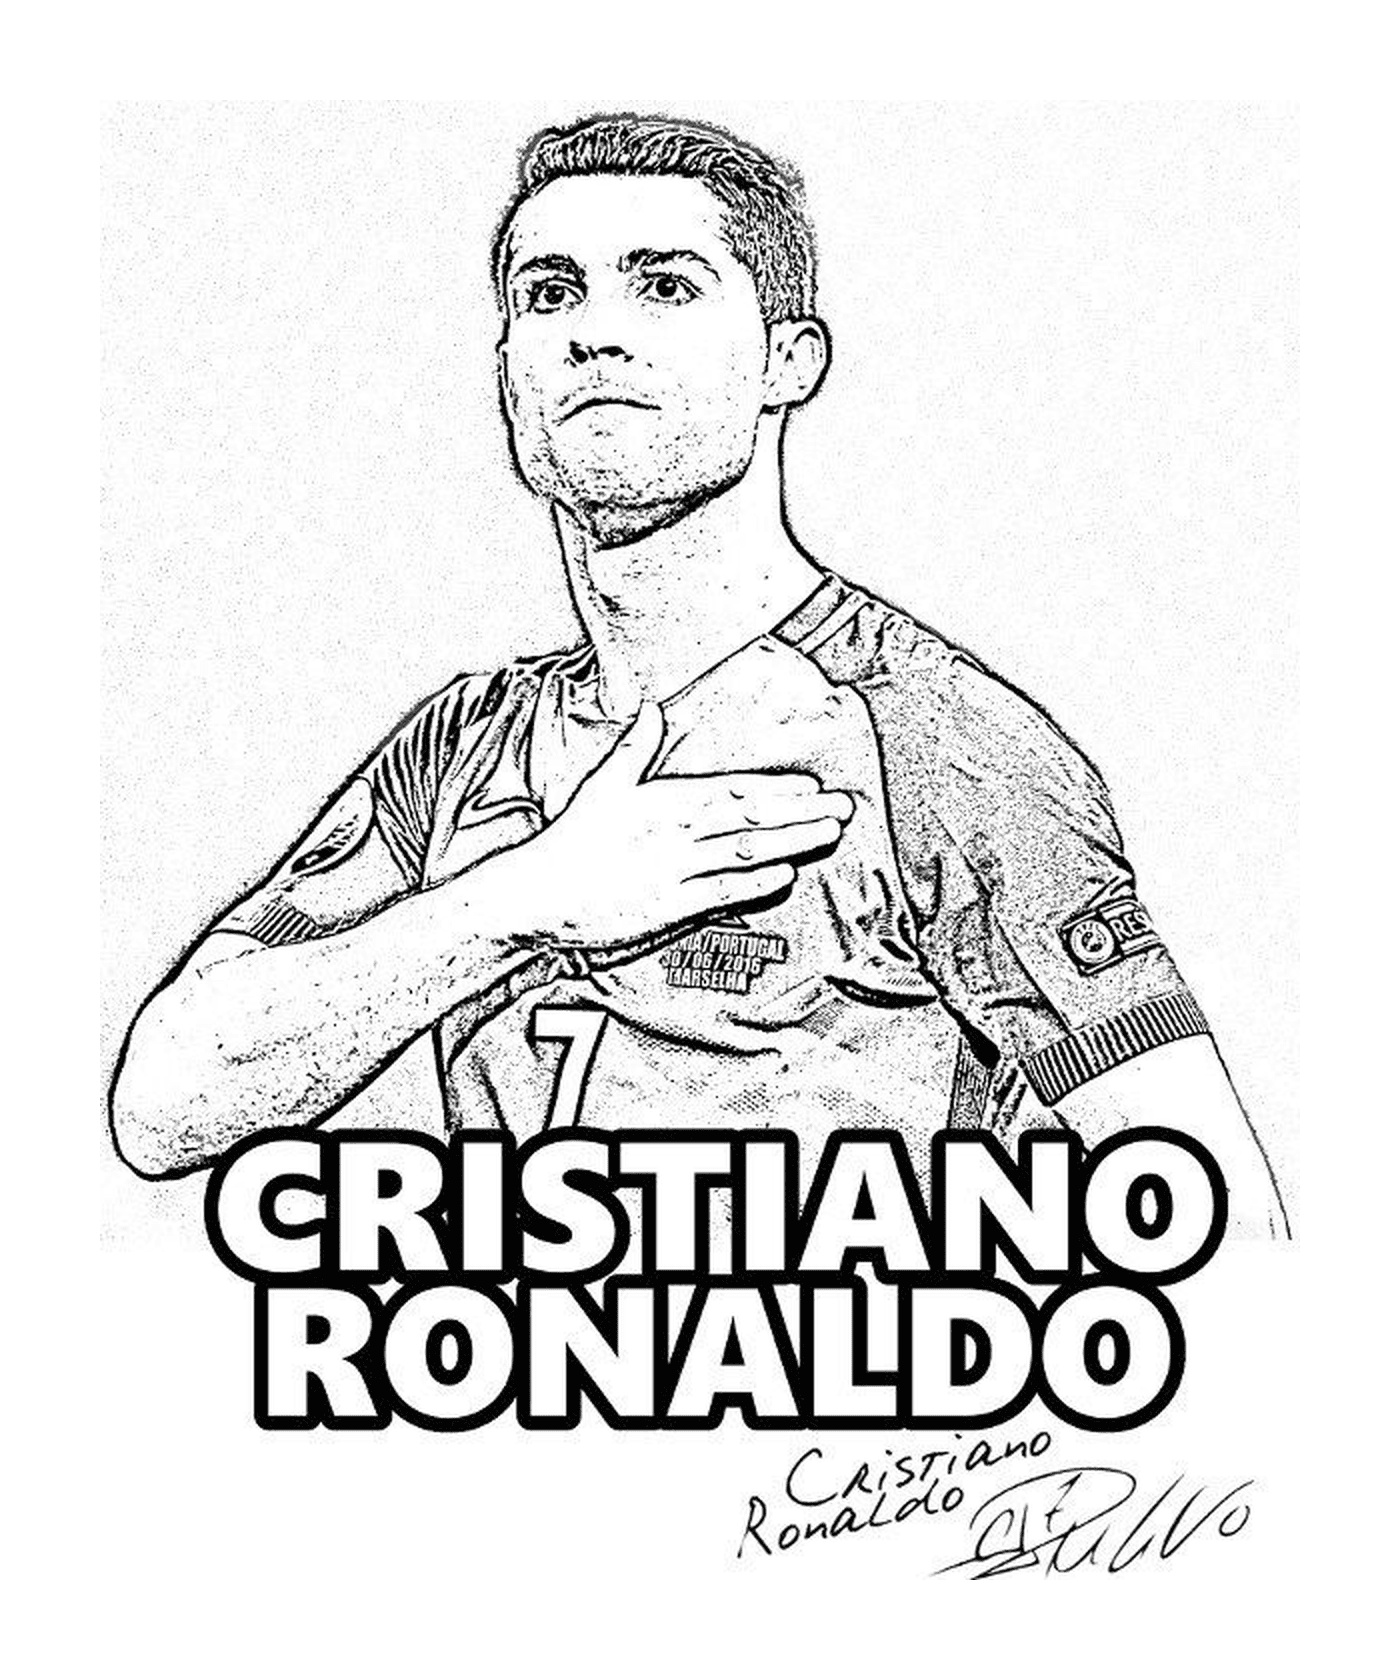   Cristiano Ronaldo, joueur portugais réaliste 